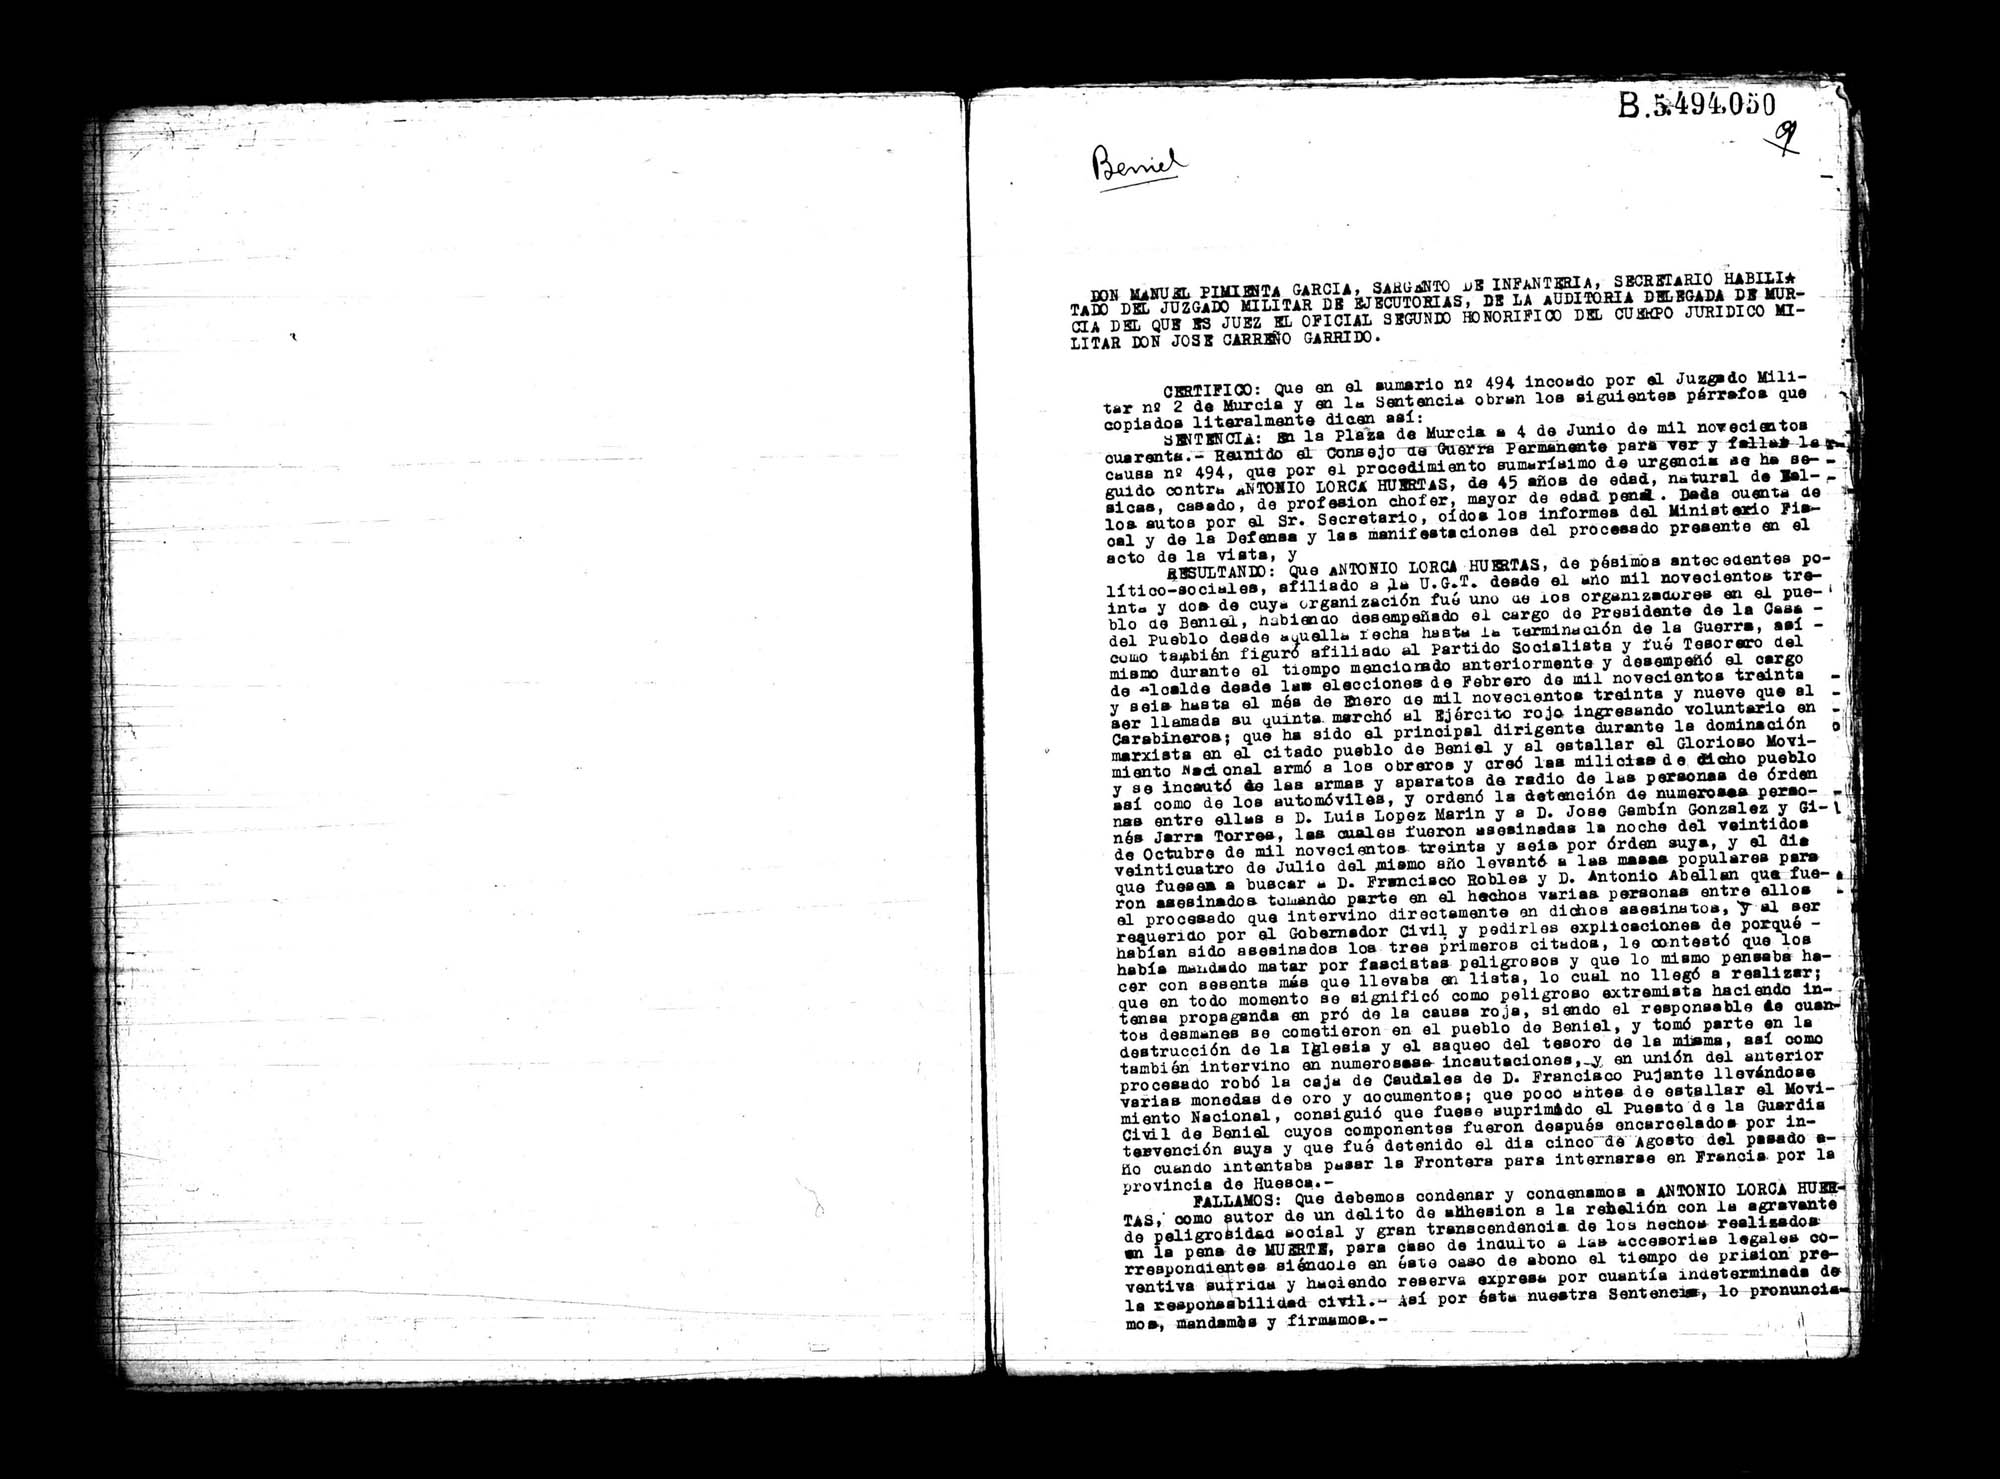 Certificado de la sentencia pronunciada contra Antonio Lorca Huertas, causa  494, el 4 de junio de 1940 en Murcia.